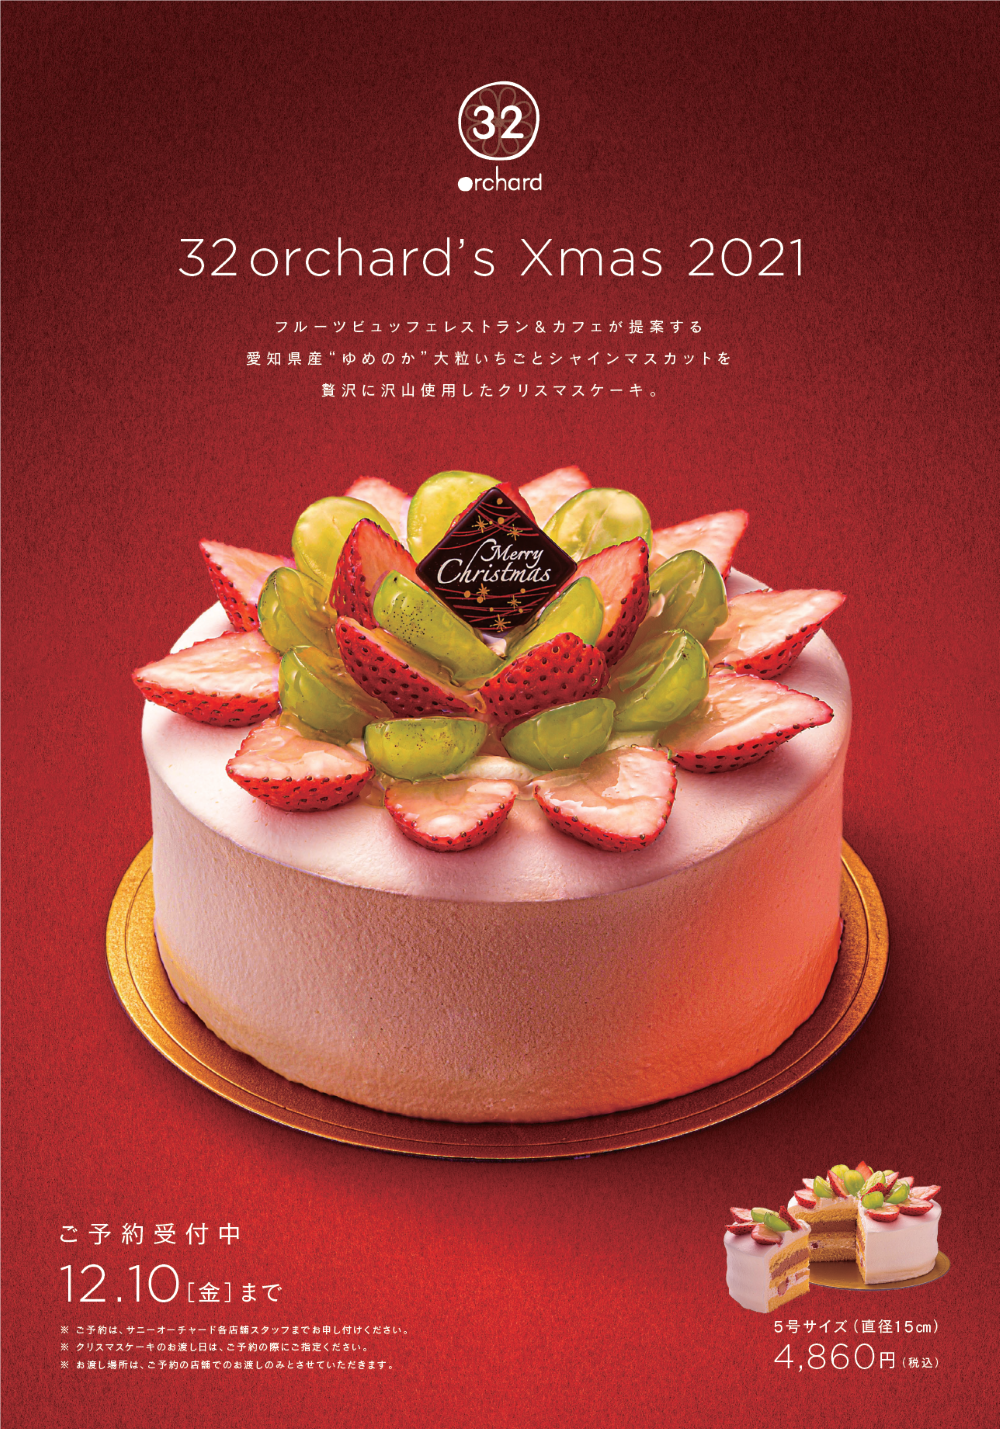 32orchardがクリスマスケーキ予約開始 32orchard サニーオーチャード